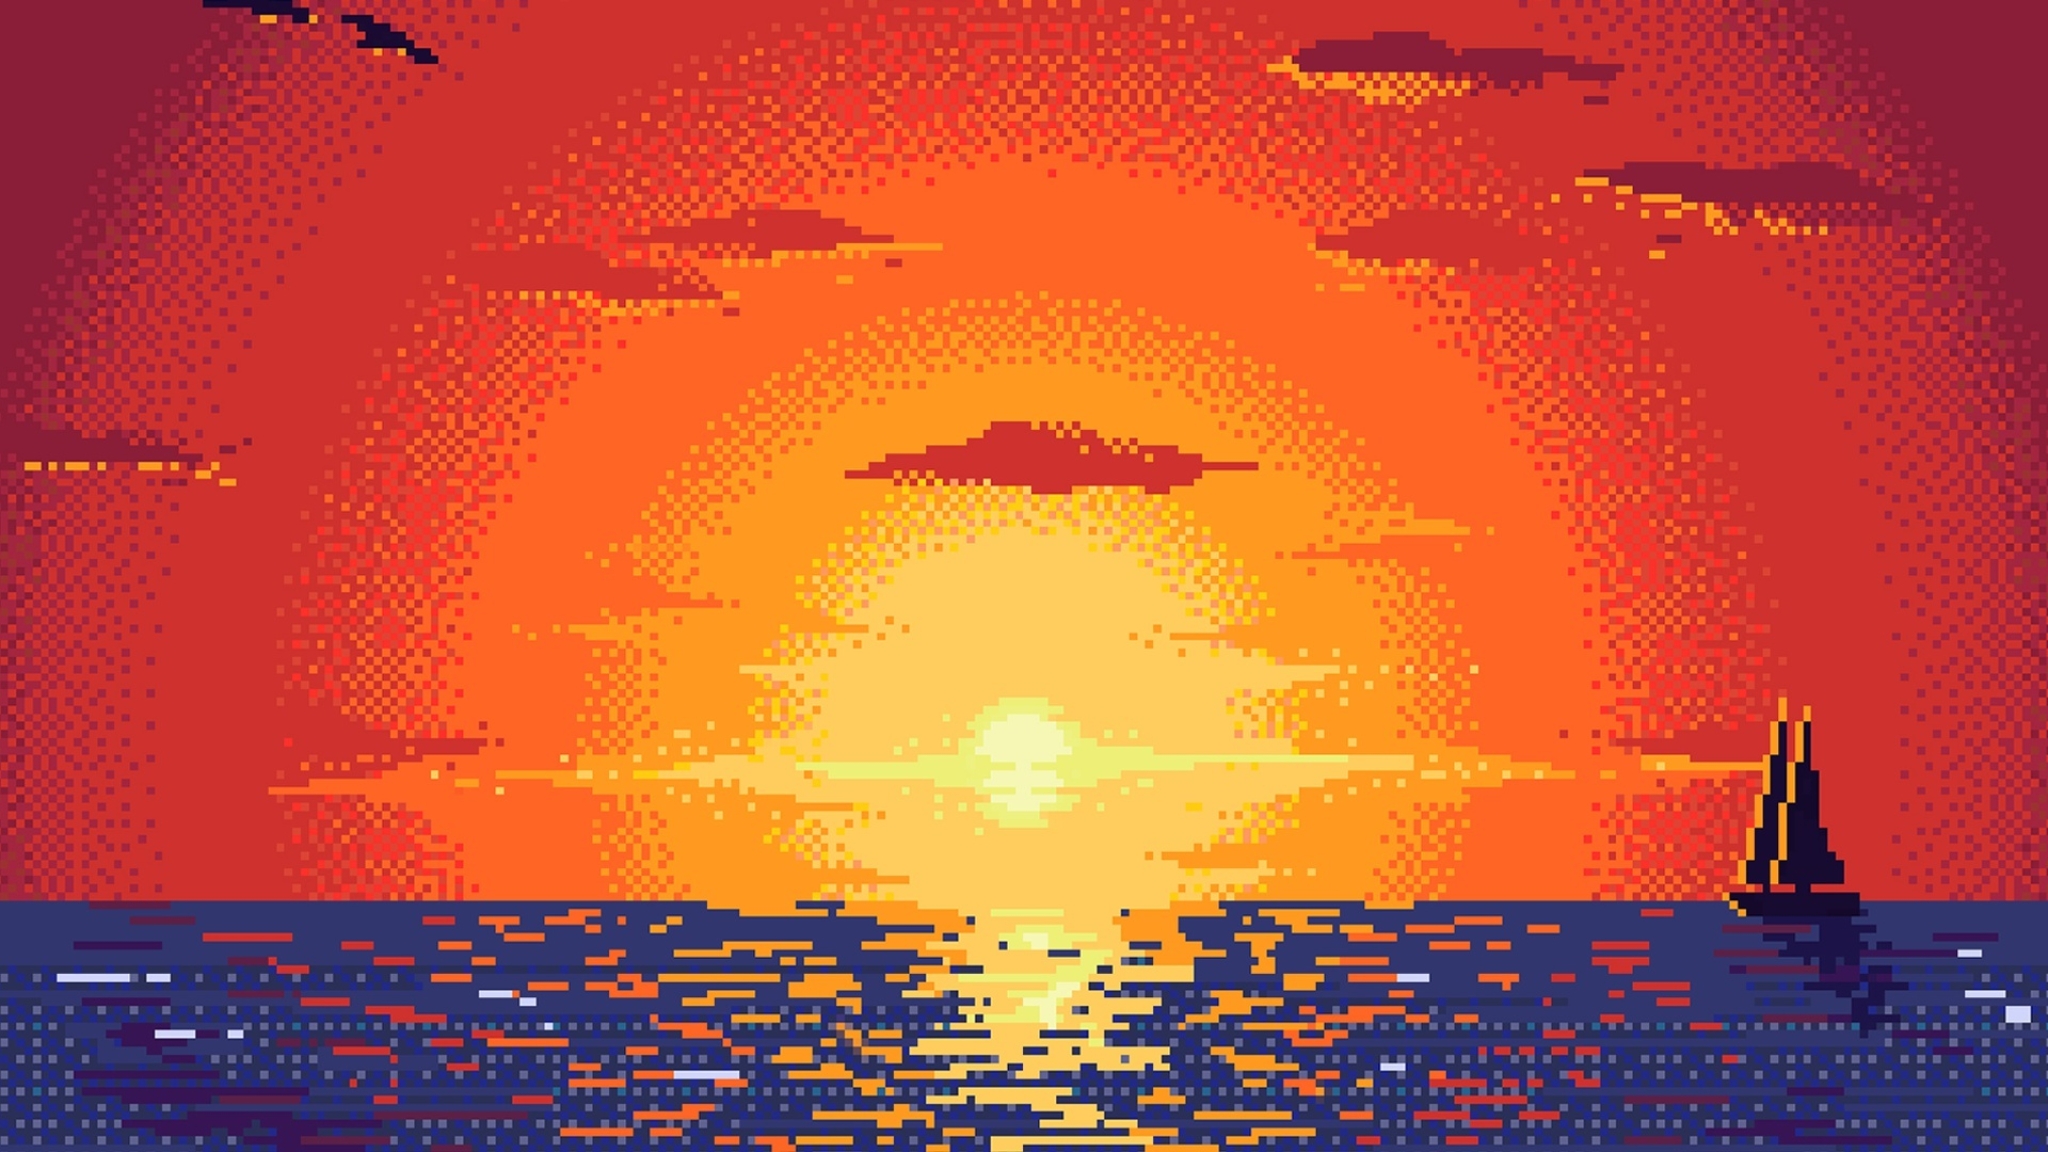 2048x1152 Pixel Sunset Digital Art 2048x1152 Resolution